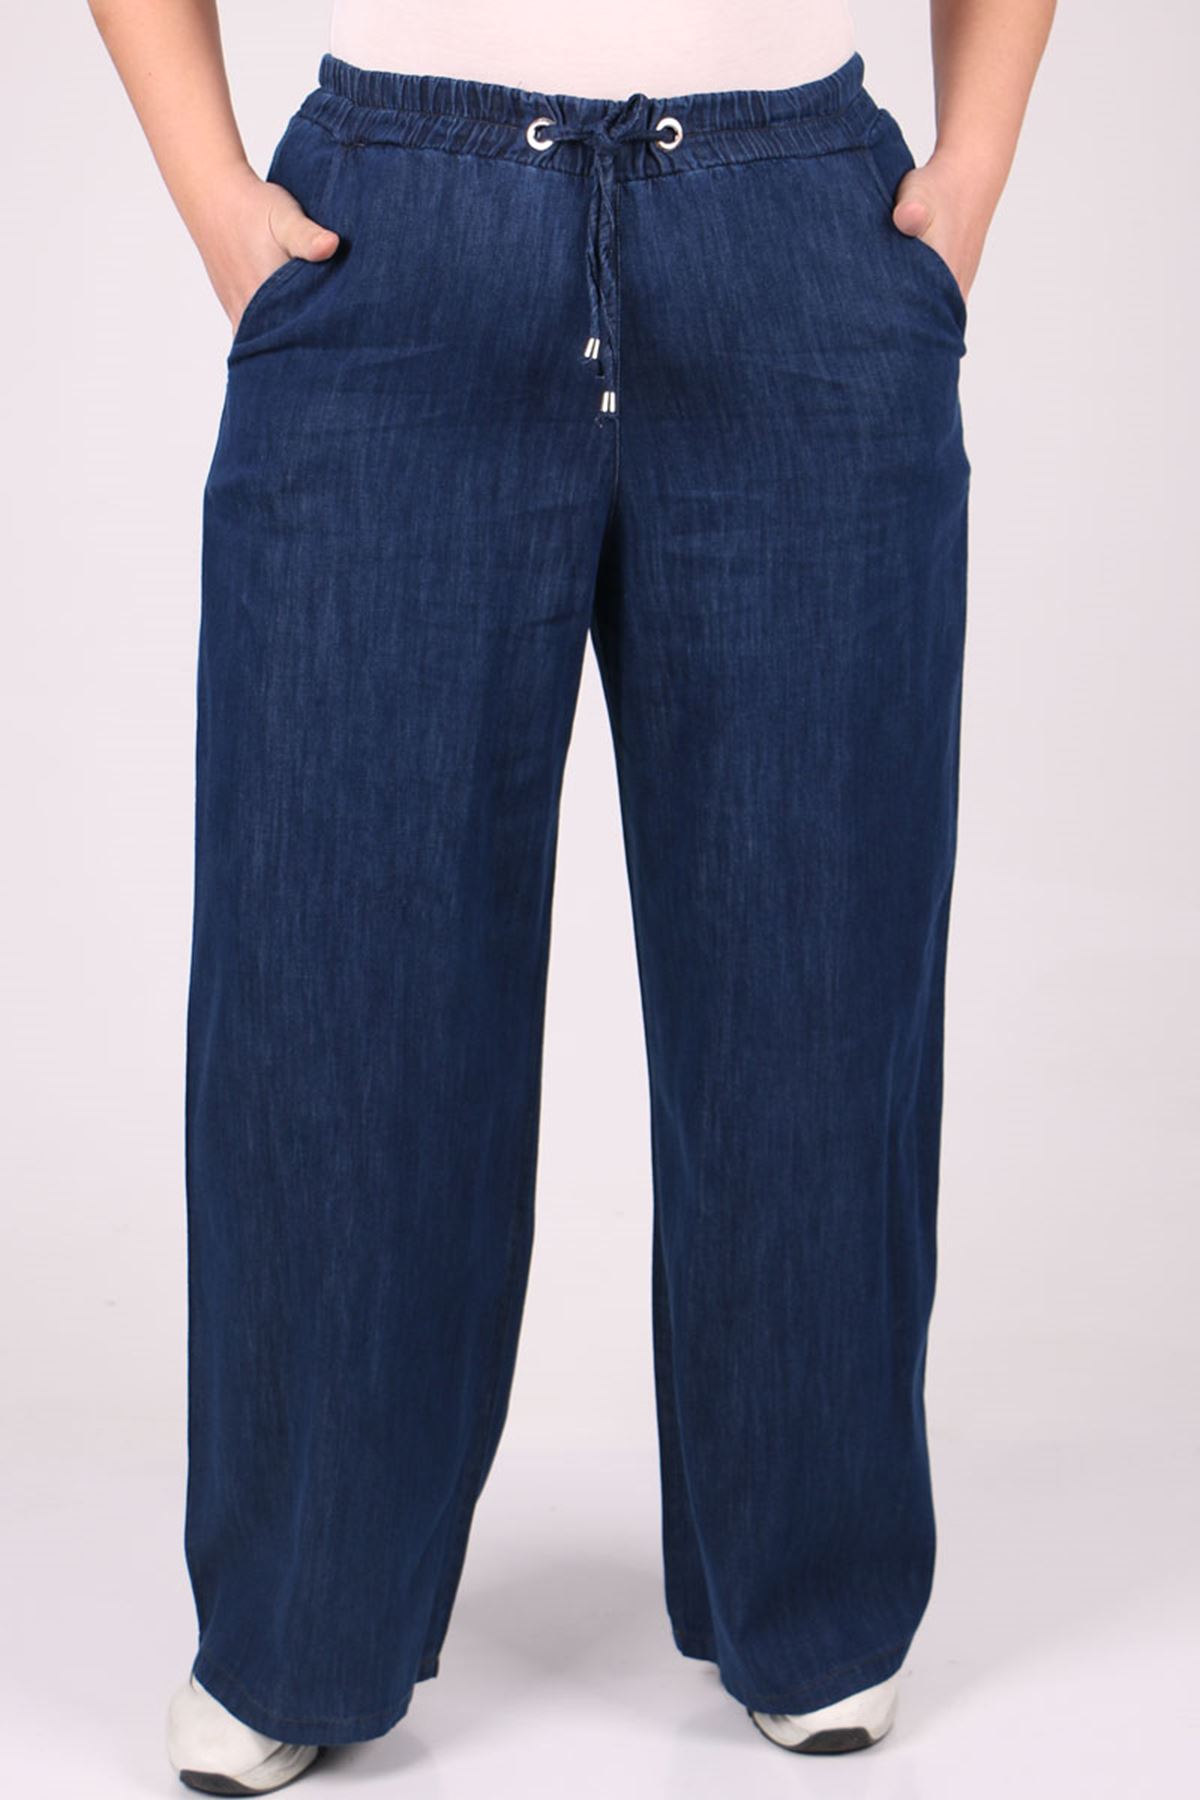 29000 Plus Size Plentiful Trotter Jeans Pants - Navy blue